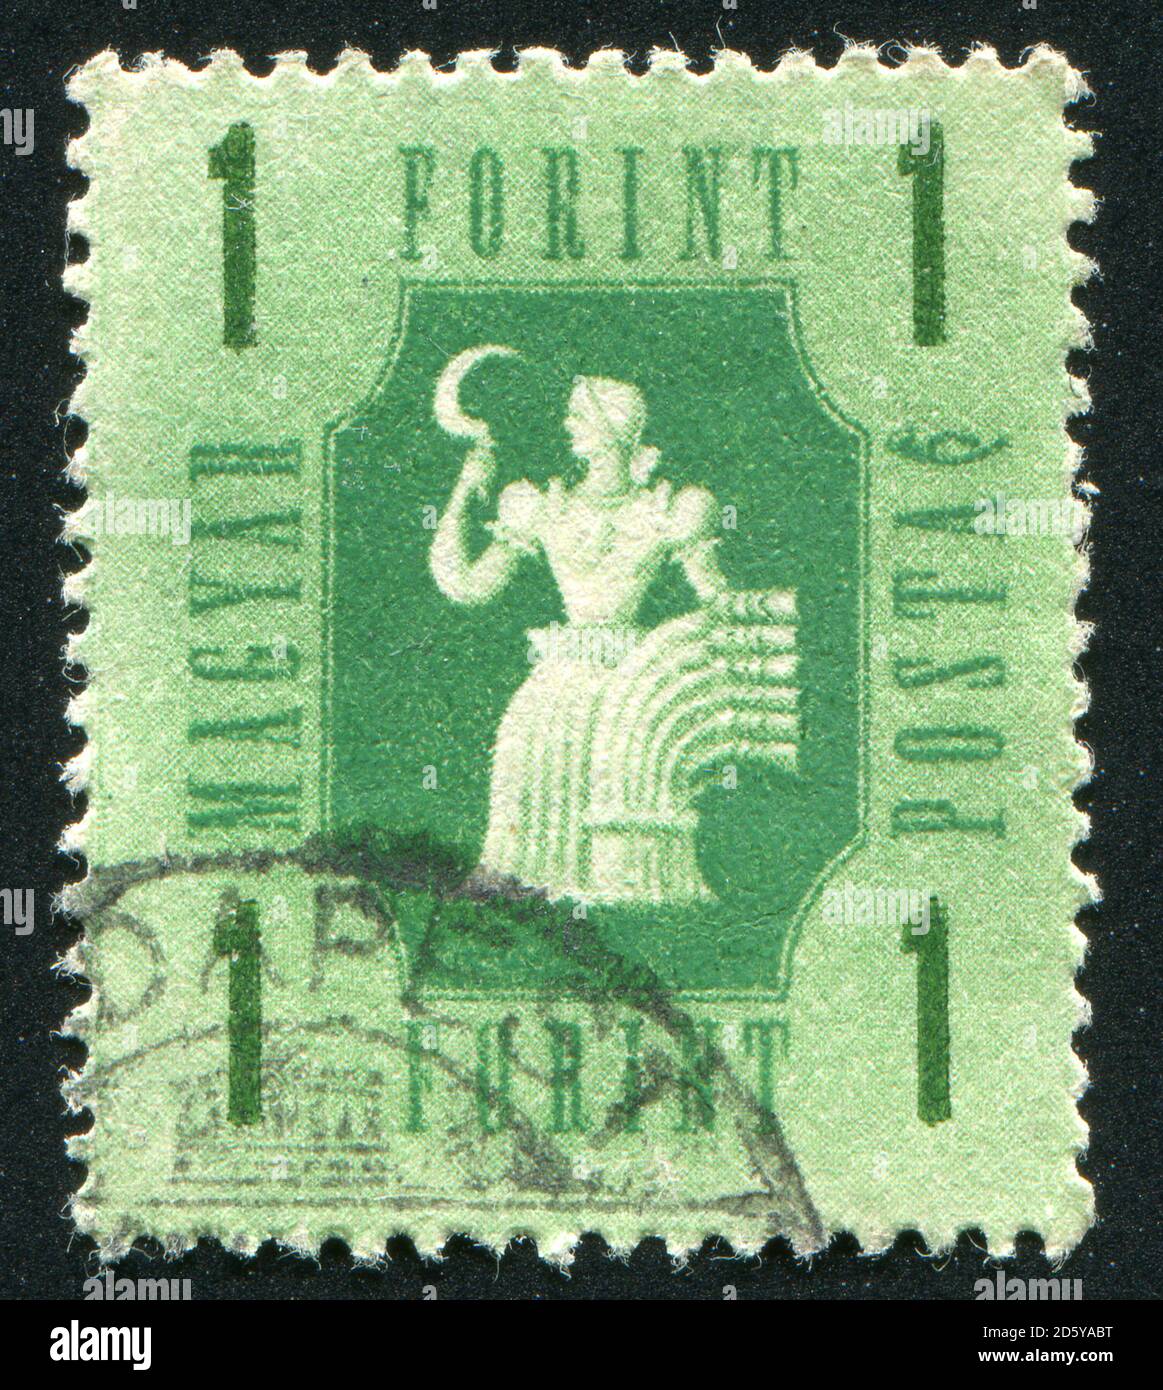 UNGARN - UM 1946: Briefmarke gedruckt von Ungarn, zeigt Landwirtschaft, um 1946 Stockfoto